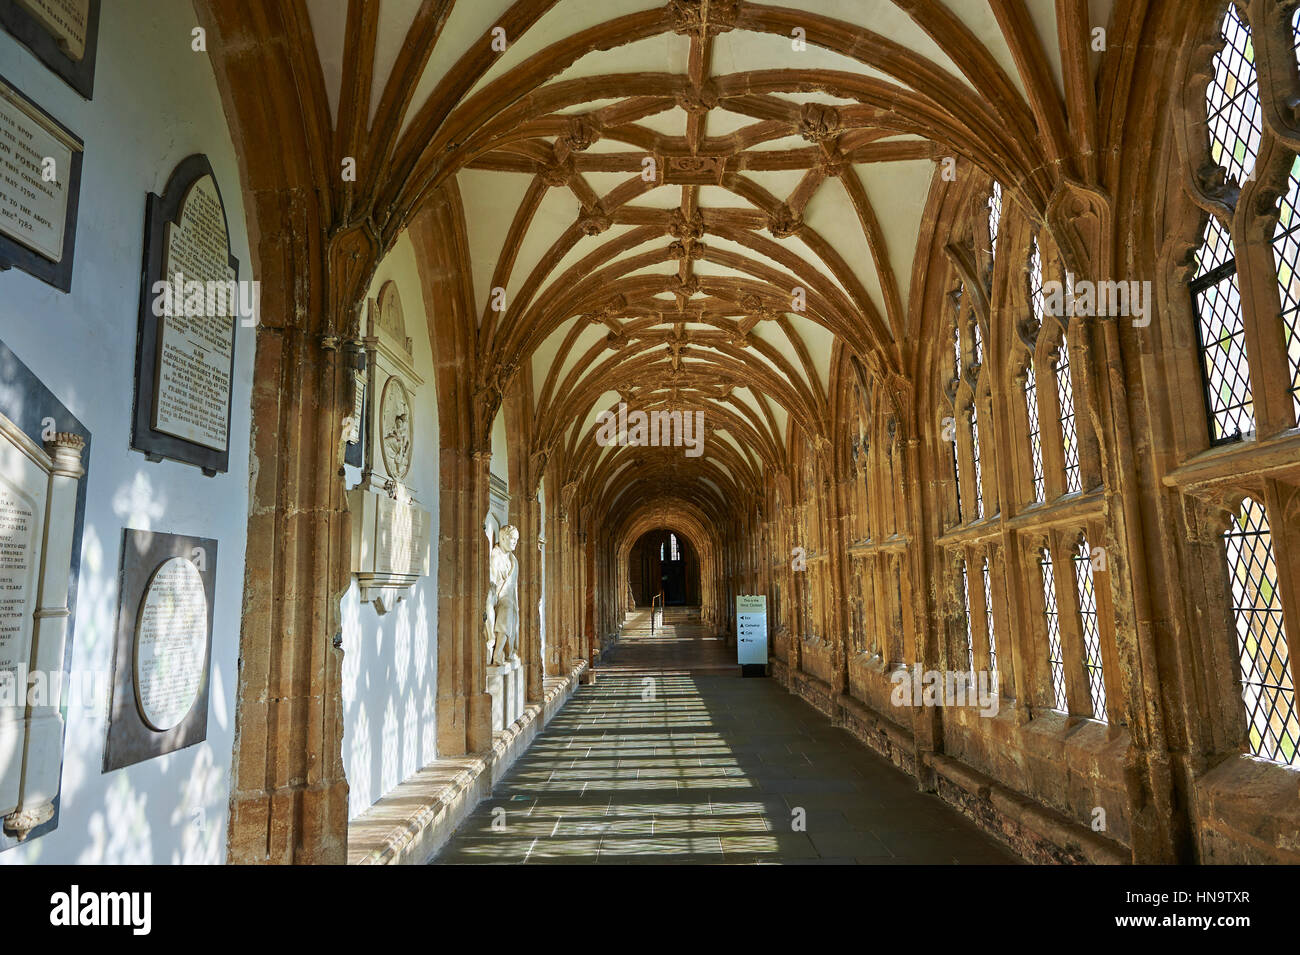 Korridor von der mittelalterlichen Brunnen-Kathedrale gebaut in den frühen englischen gotischen Stil im Jahre 1175, Wells, Somerset, England Stockfoto